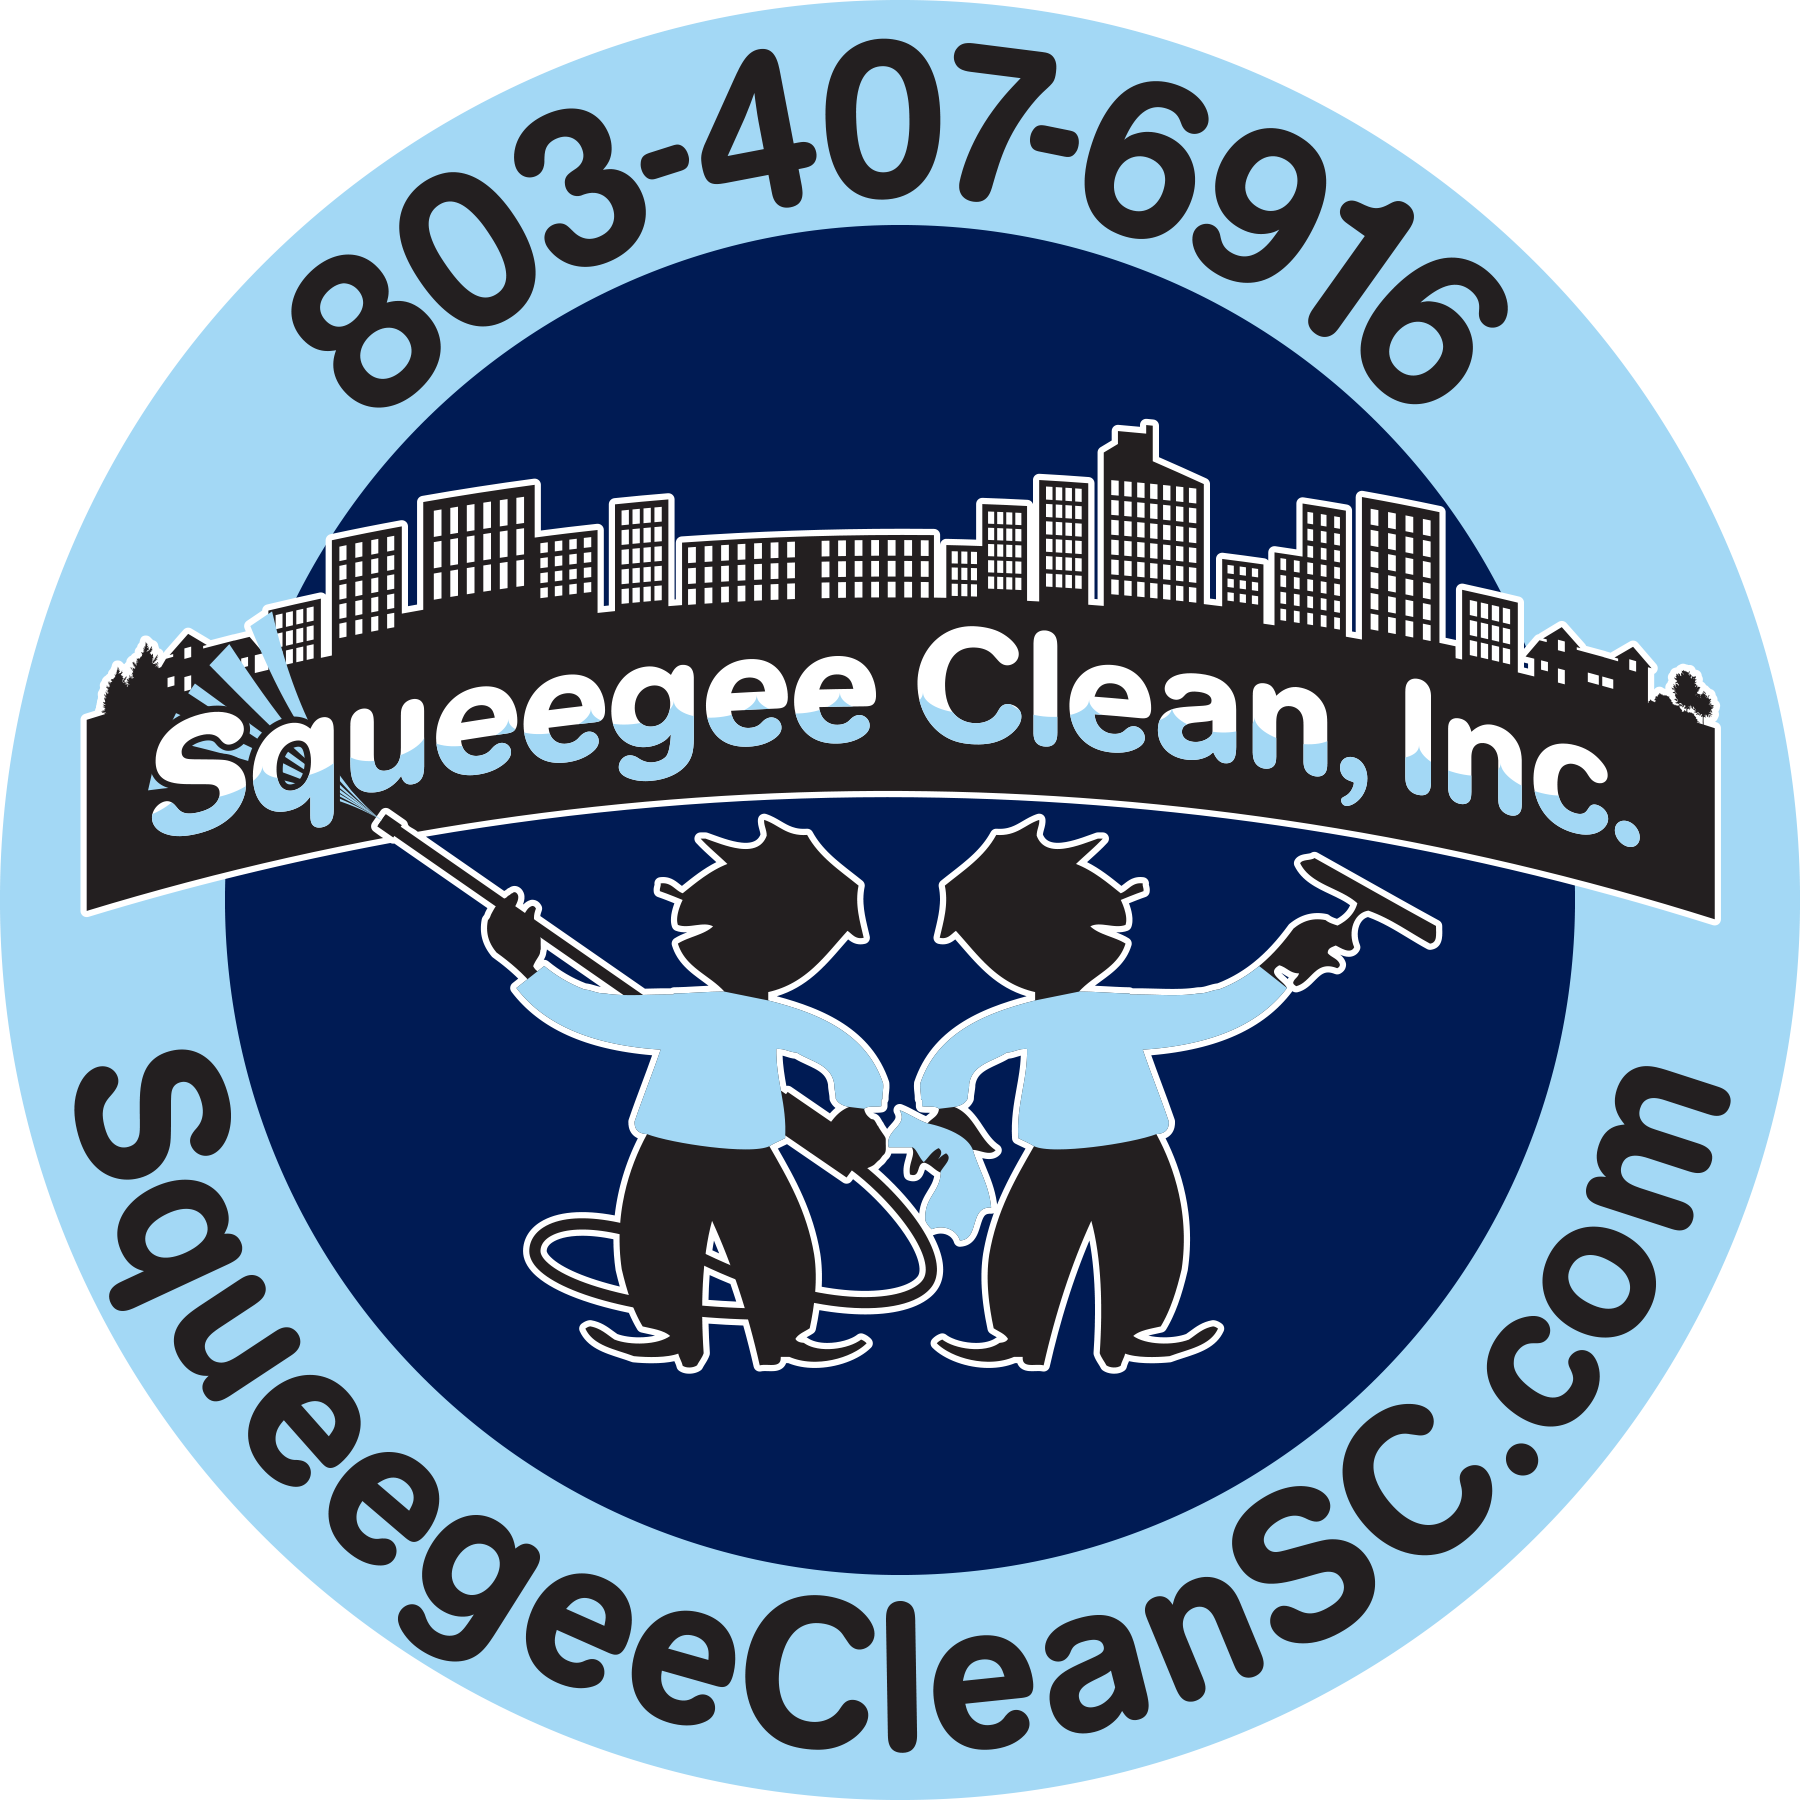 Squeegee Clean, Inc.